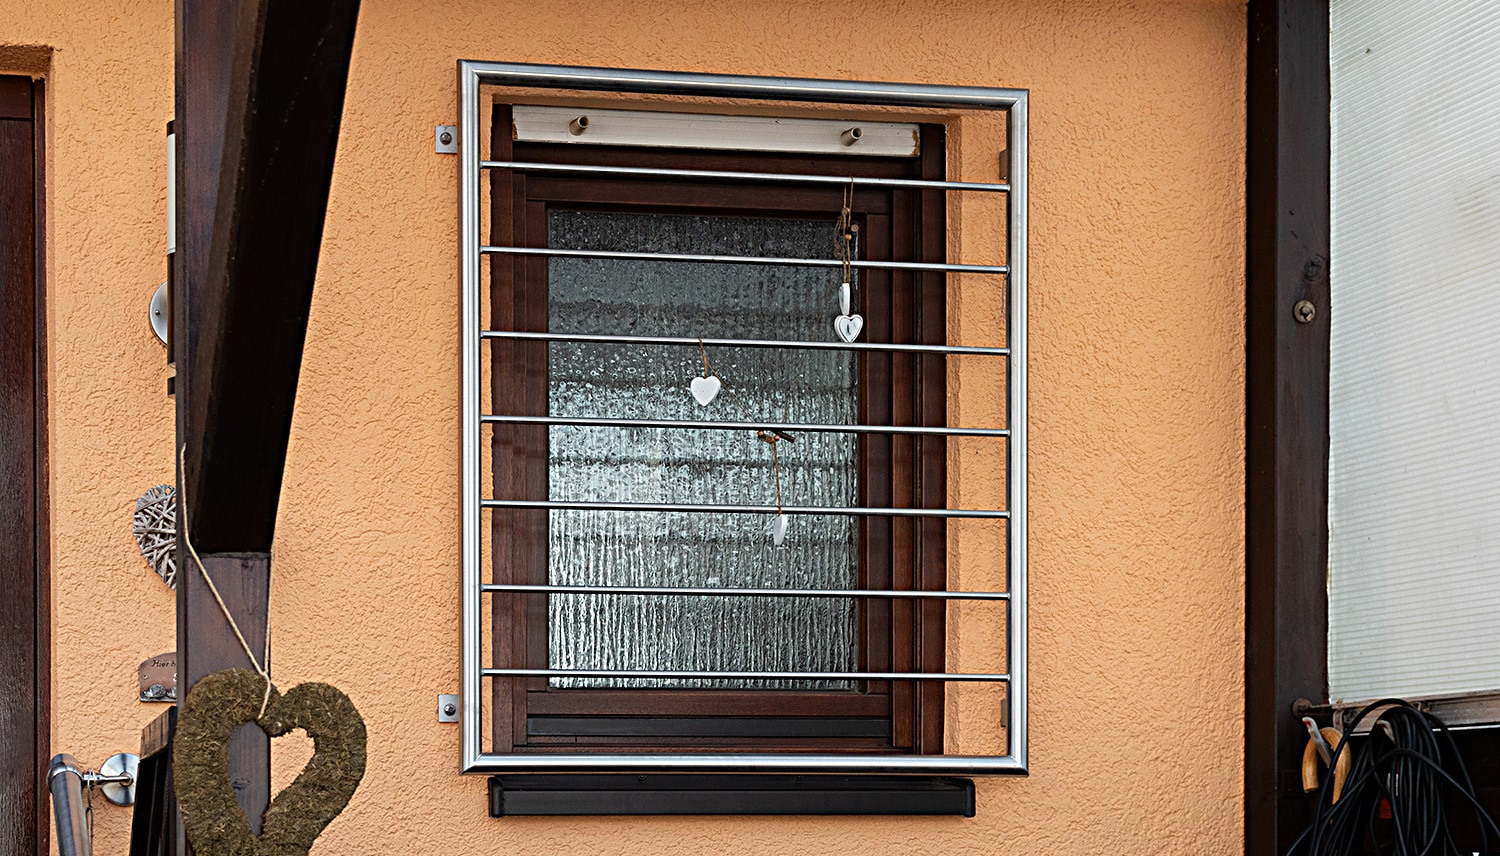 Grille de défense pour fenêtres en acier inoxydable barre transversale